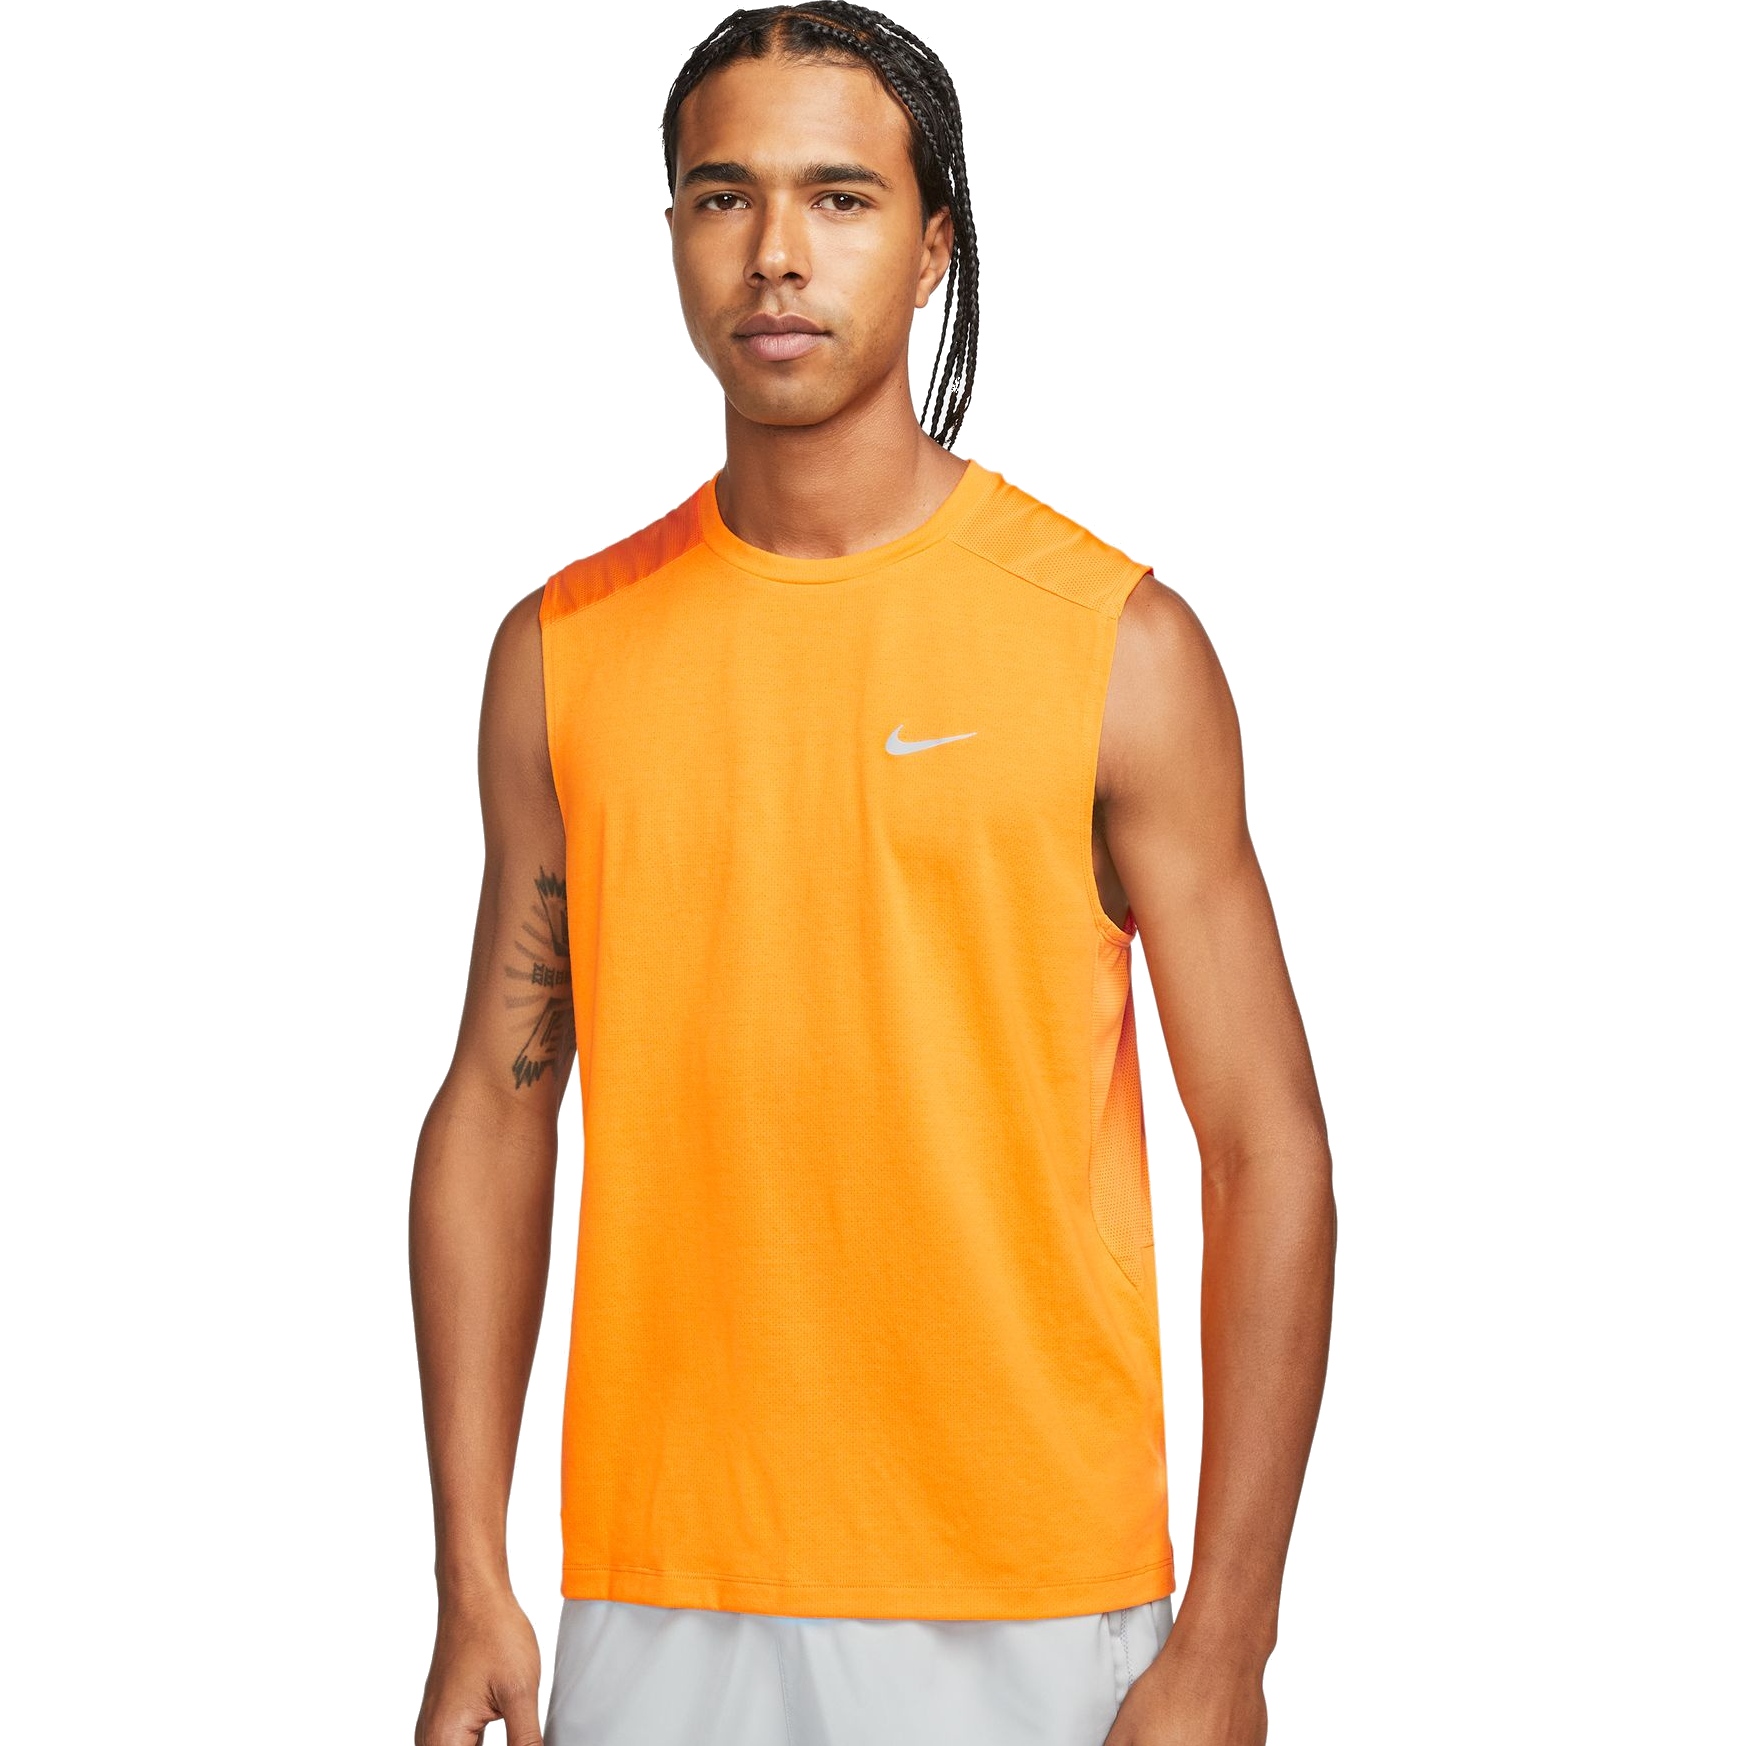 Produktbild von Nike Dri-FIT Run Division Rise 365 Herren Laufoberteil - vivid orange/reflective silver DX0851-836